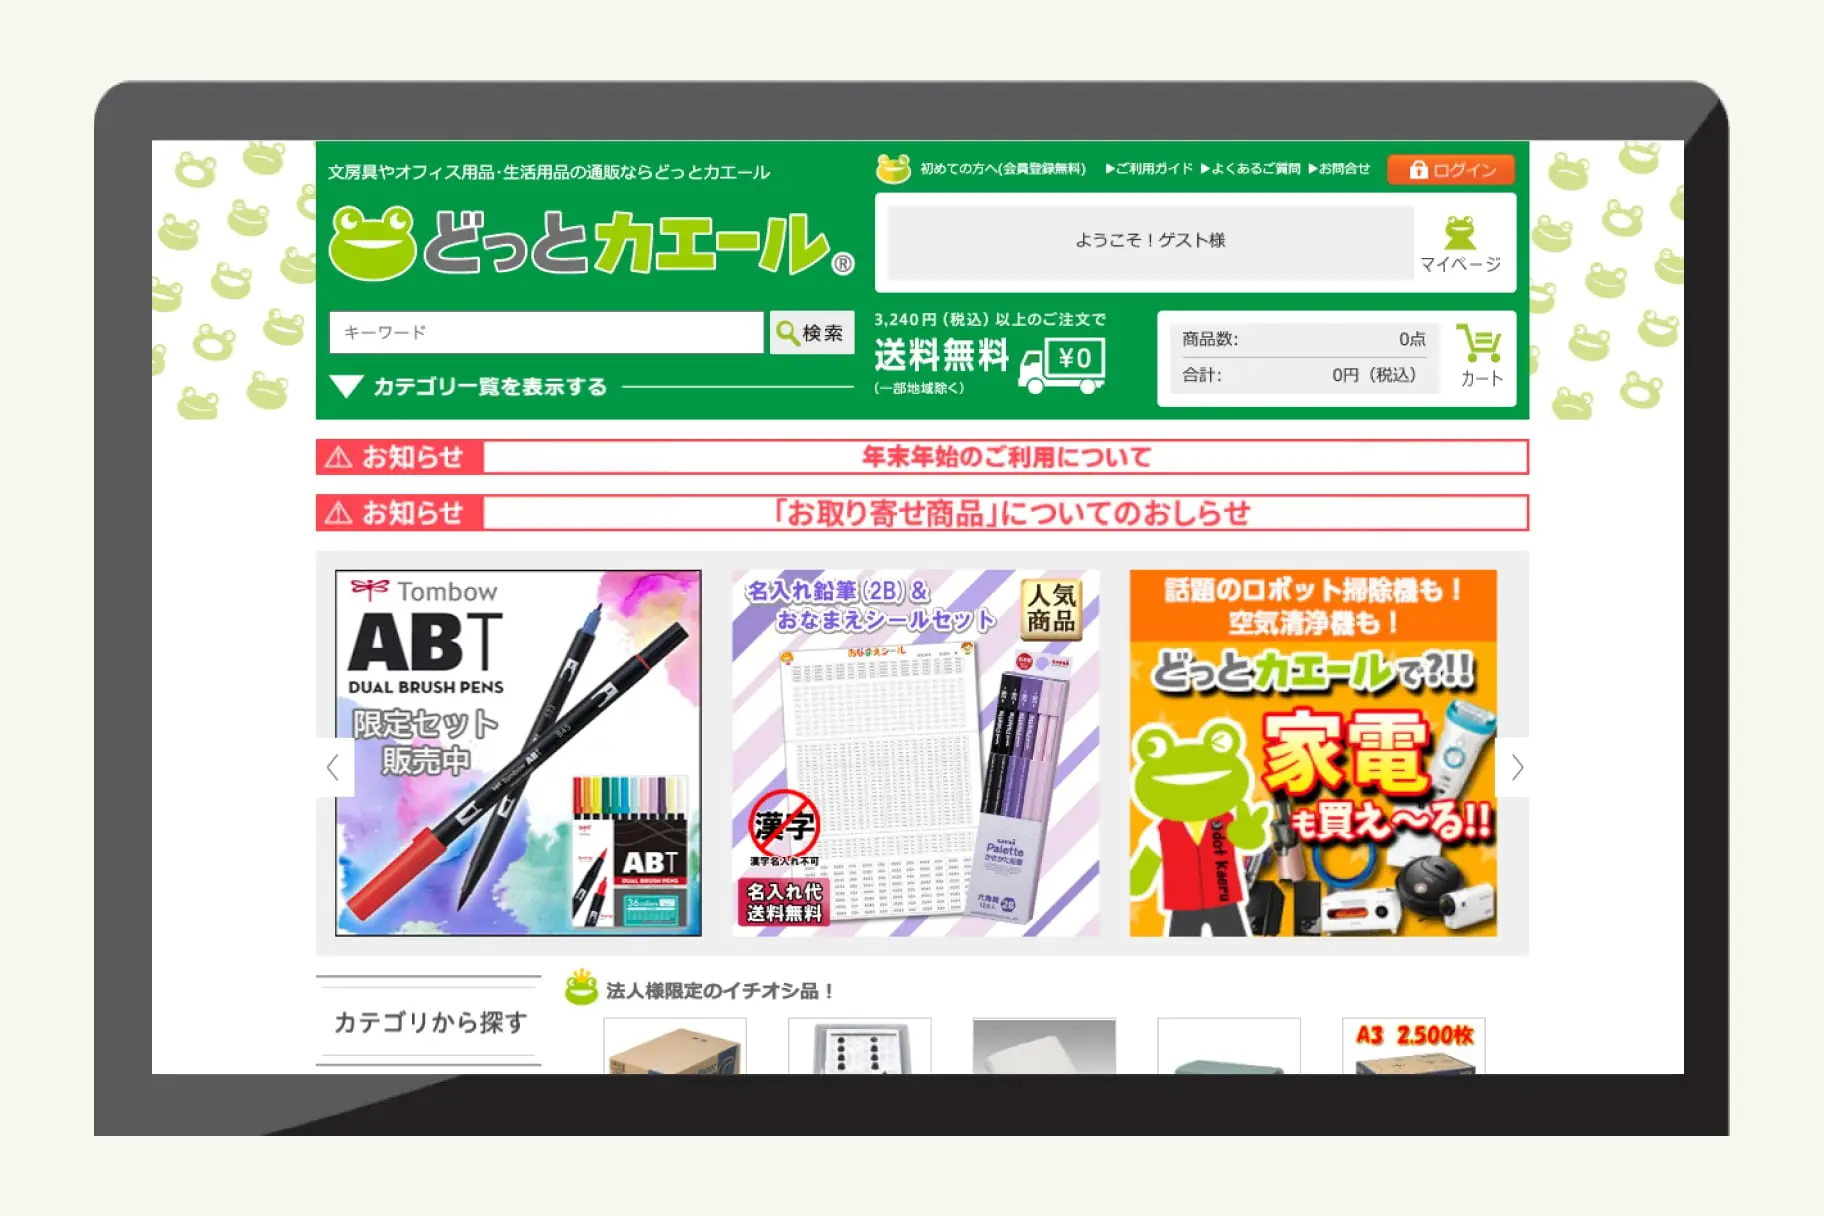 竹田印刷が自社で実施している「どっとカエール」で商品の販売代行が可能です。新たなチャネルとしてご利用頂けます。